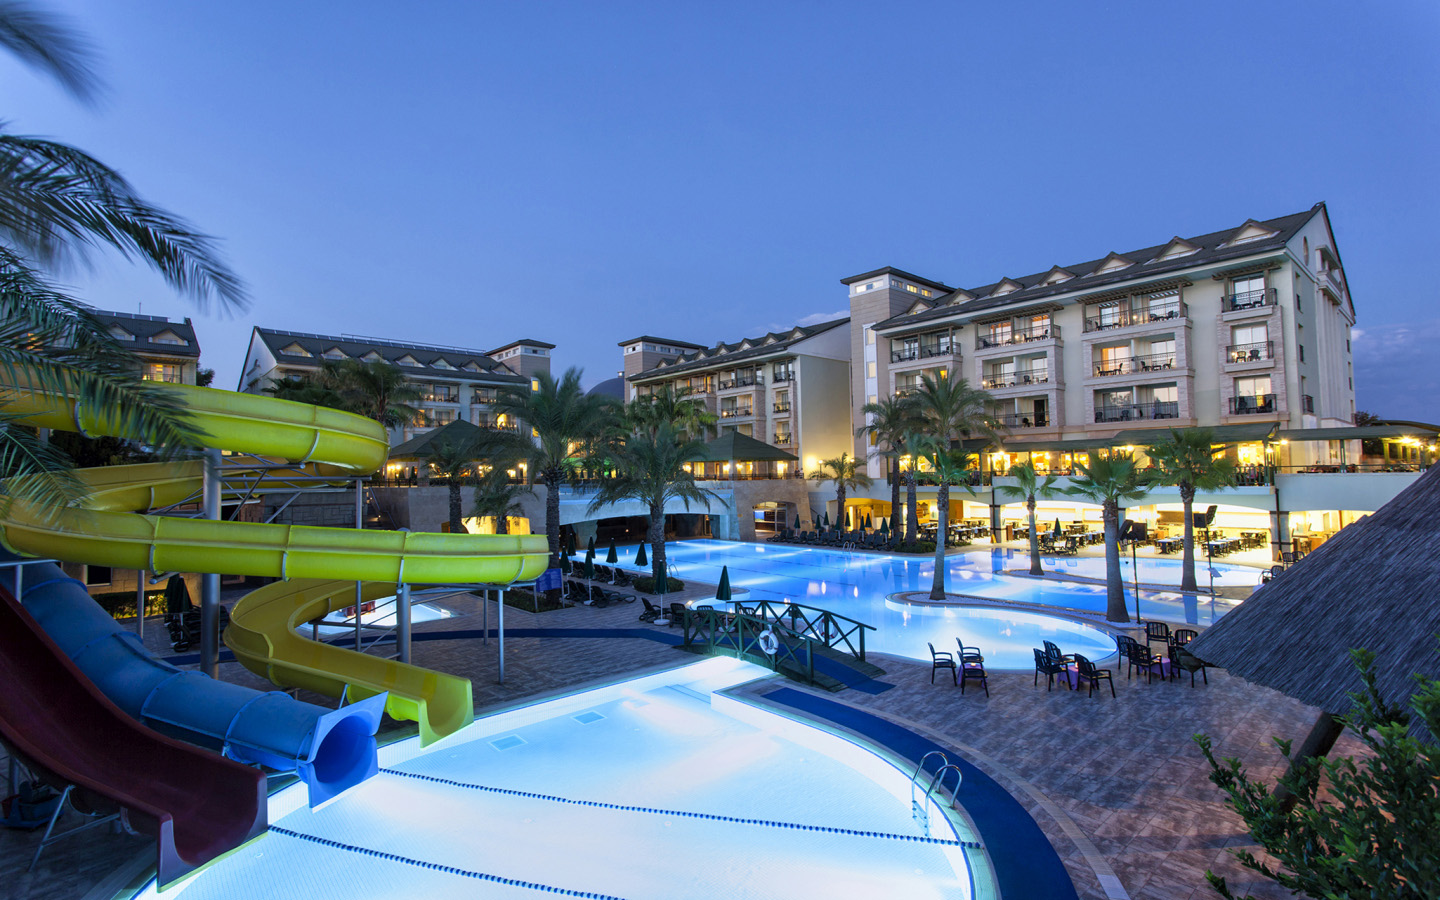 Dobedan Beach Resort Galeri Pool Card07